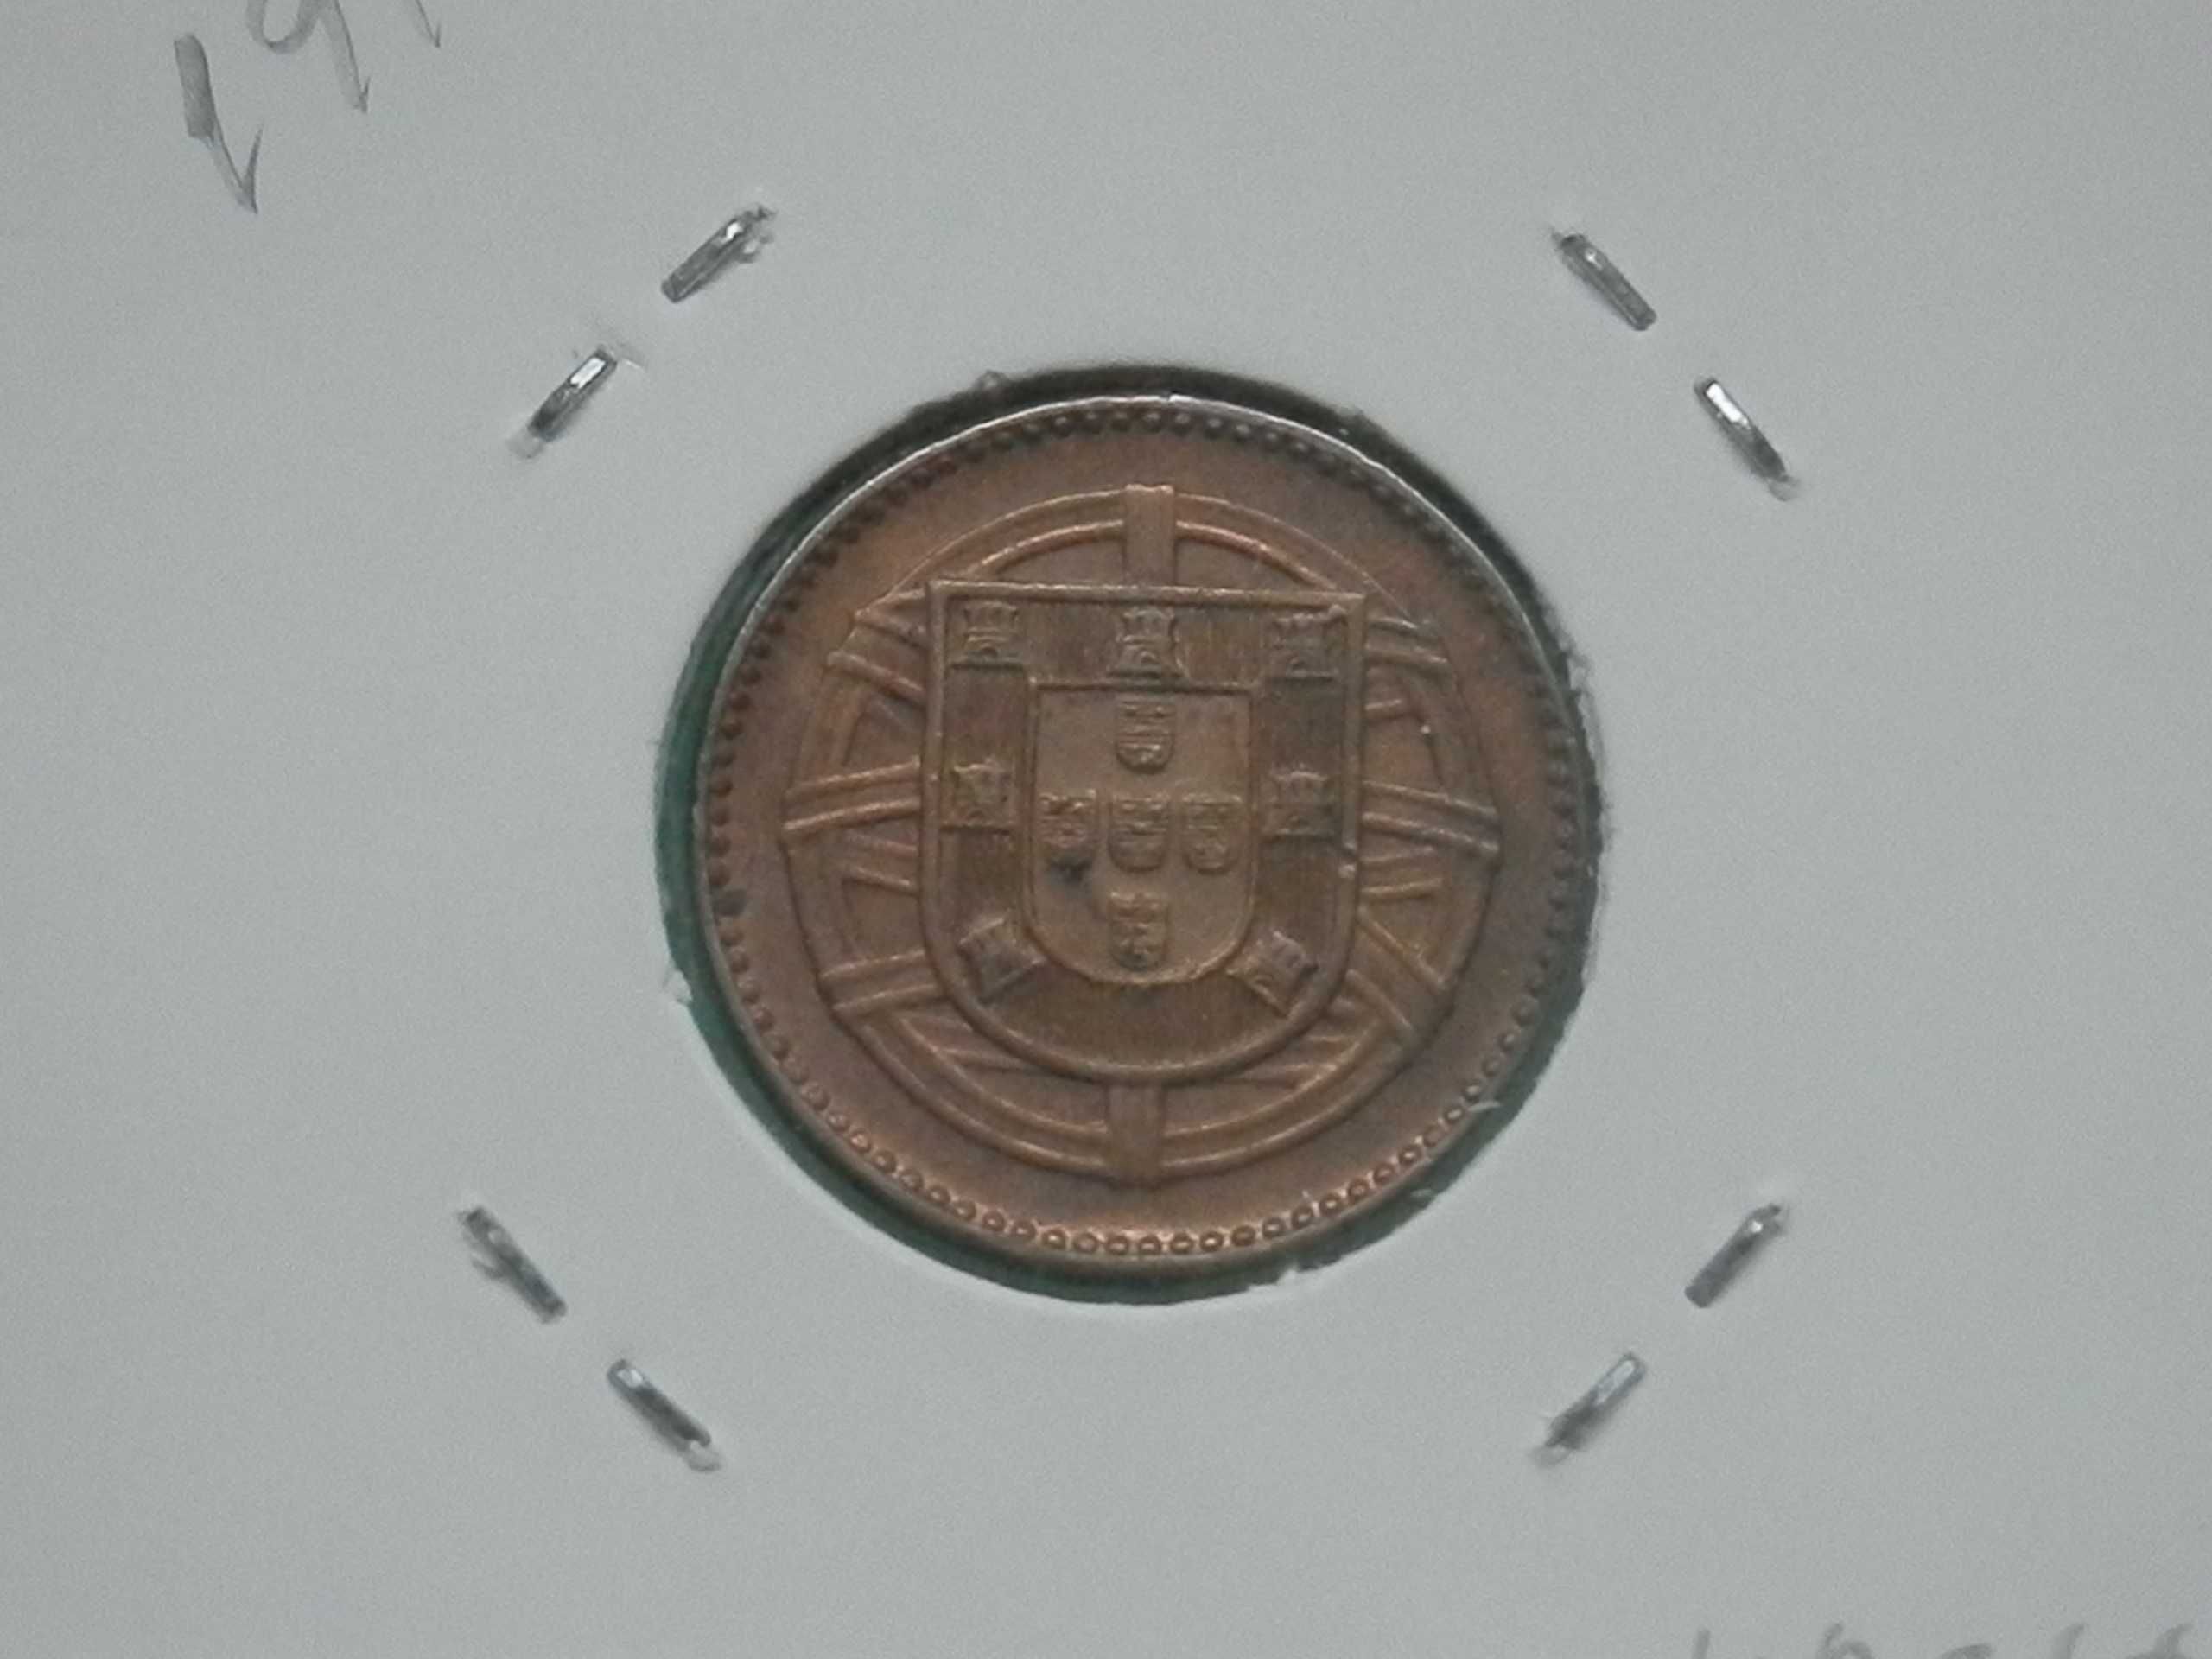 1009 - República: 1 centavo 1917 bronze, por 0,40